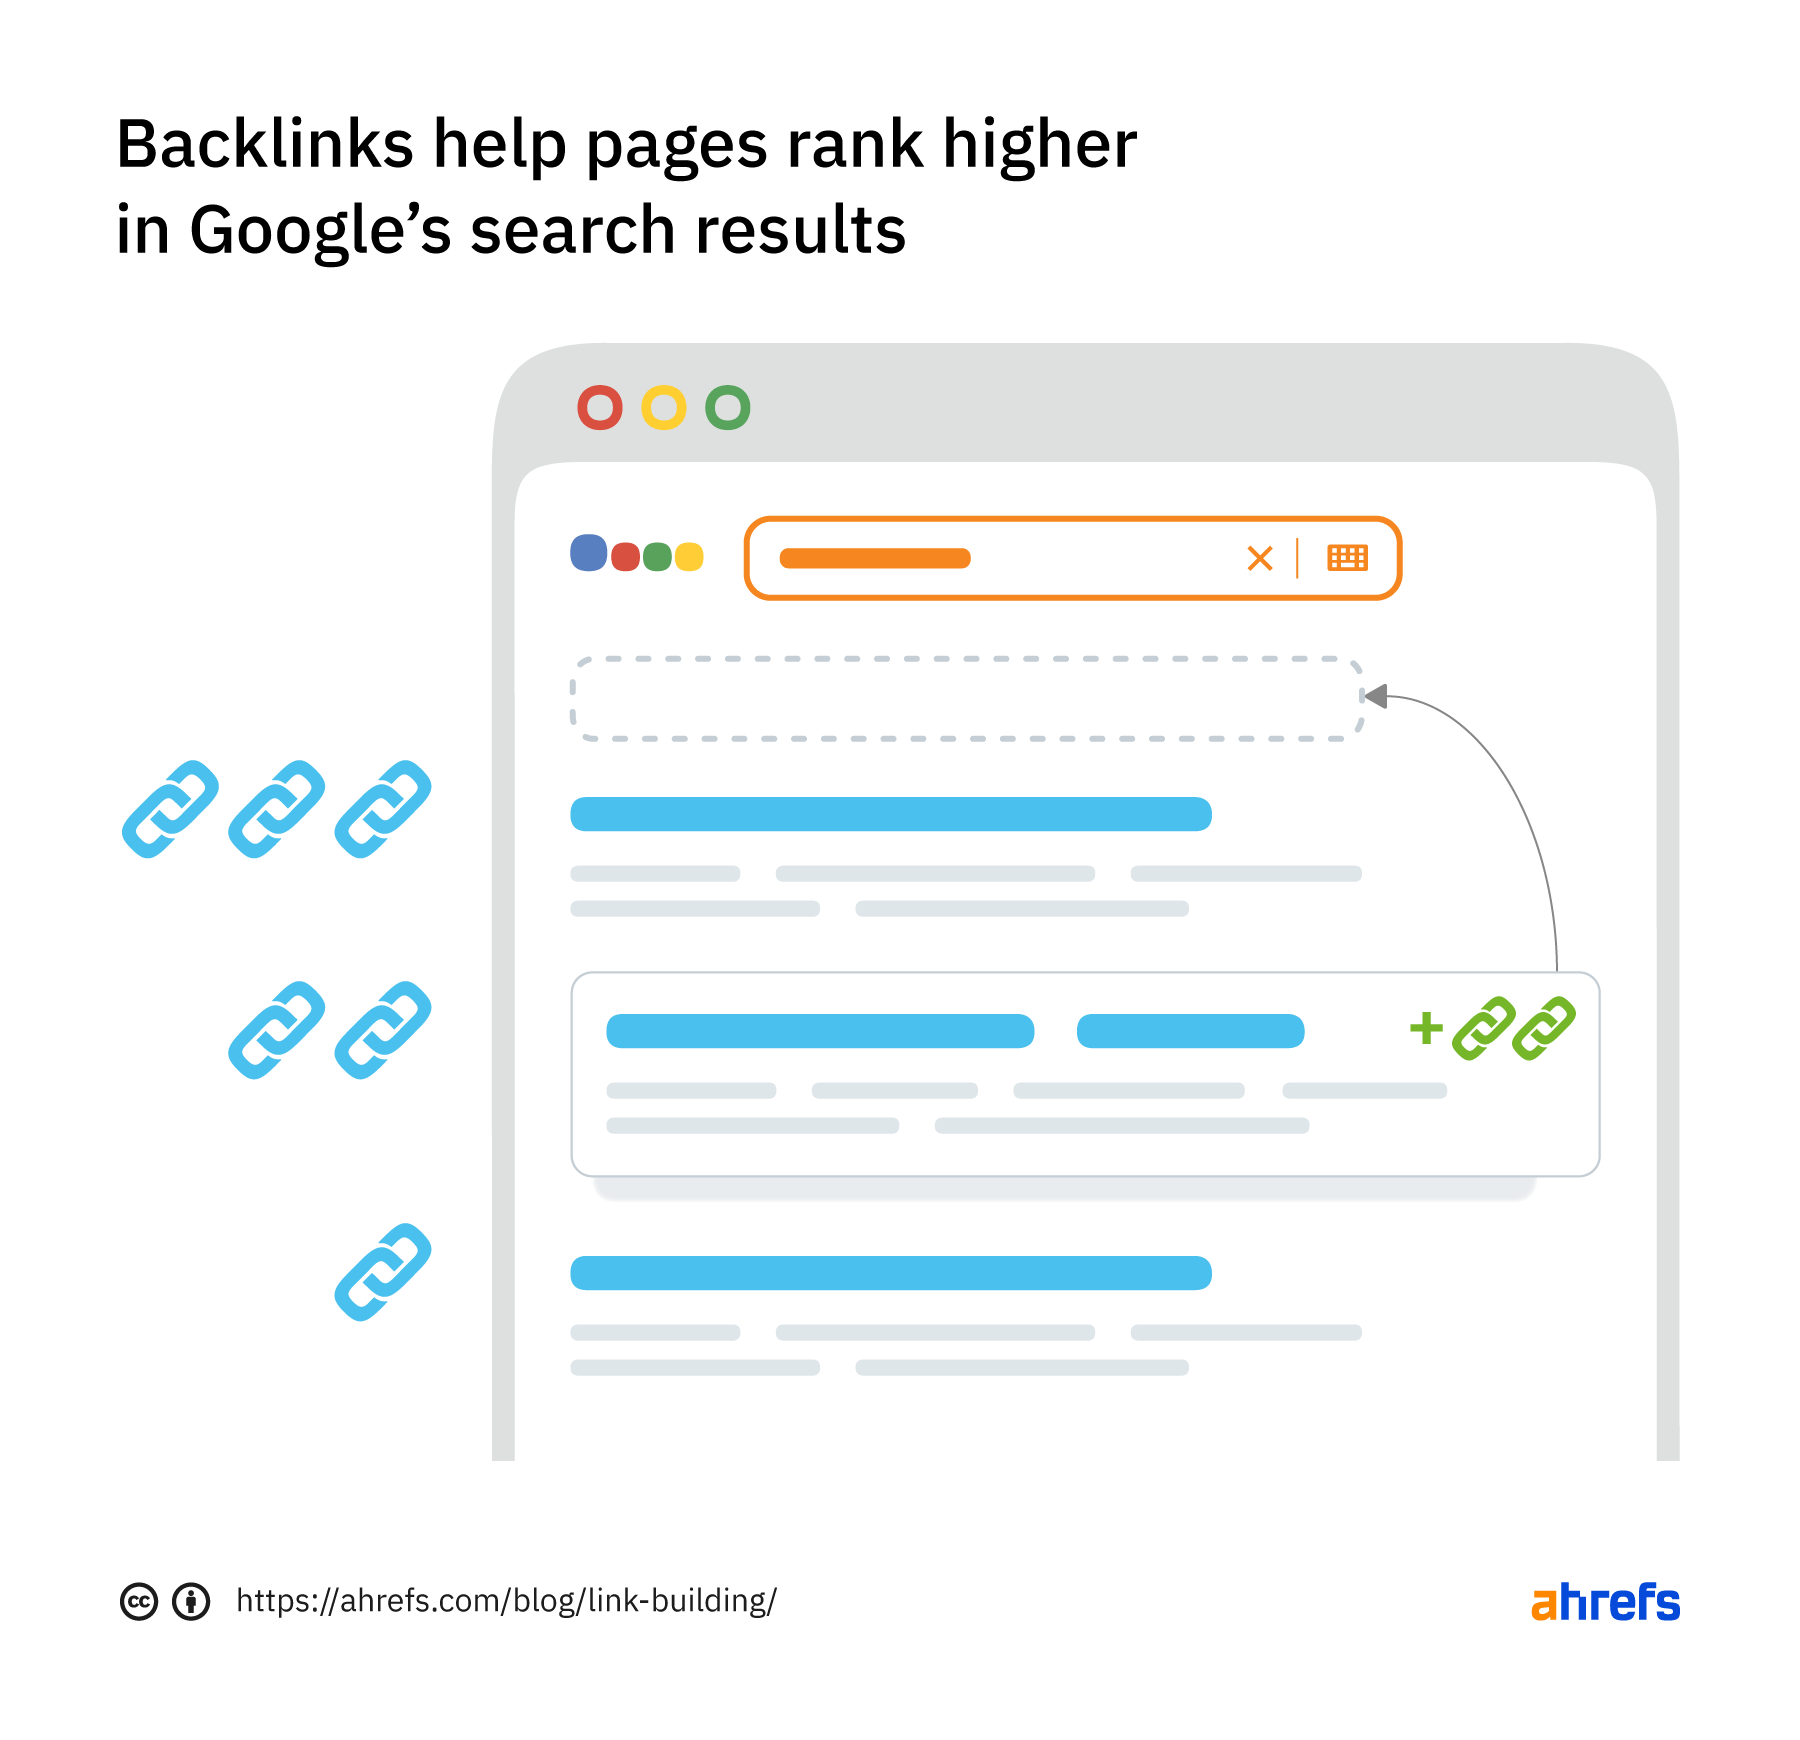 بک لینک به صفحات کمک می کند تا در نتایج جستجوی گوگل رتبه بالاتری داشته باشند